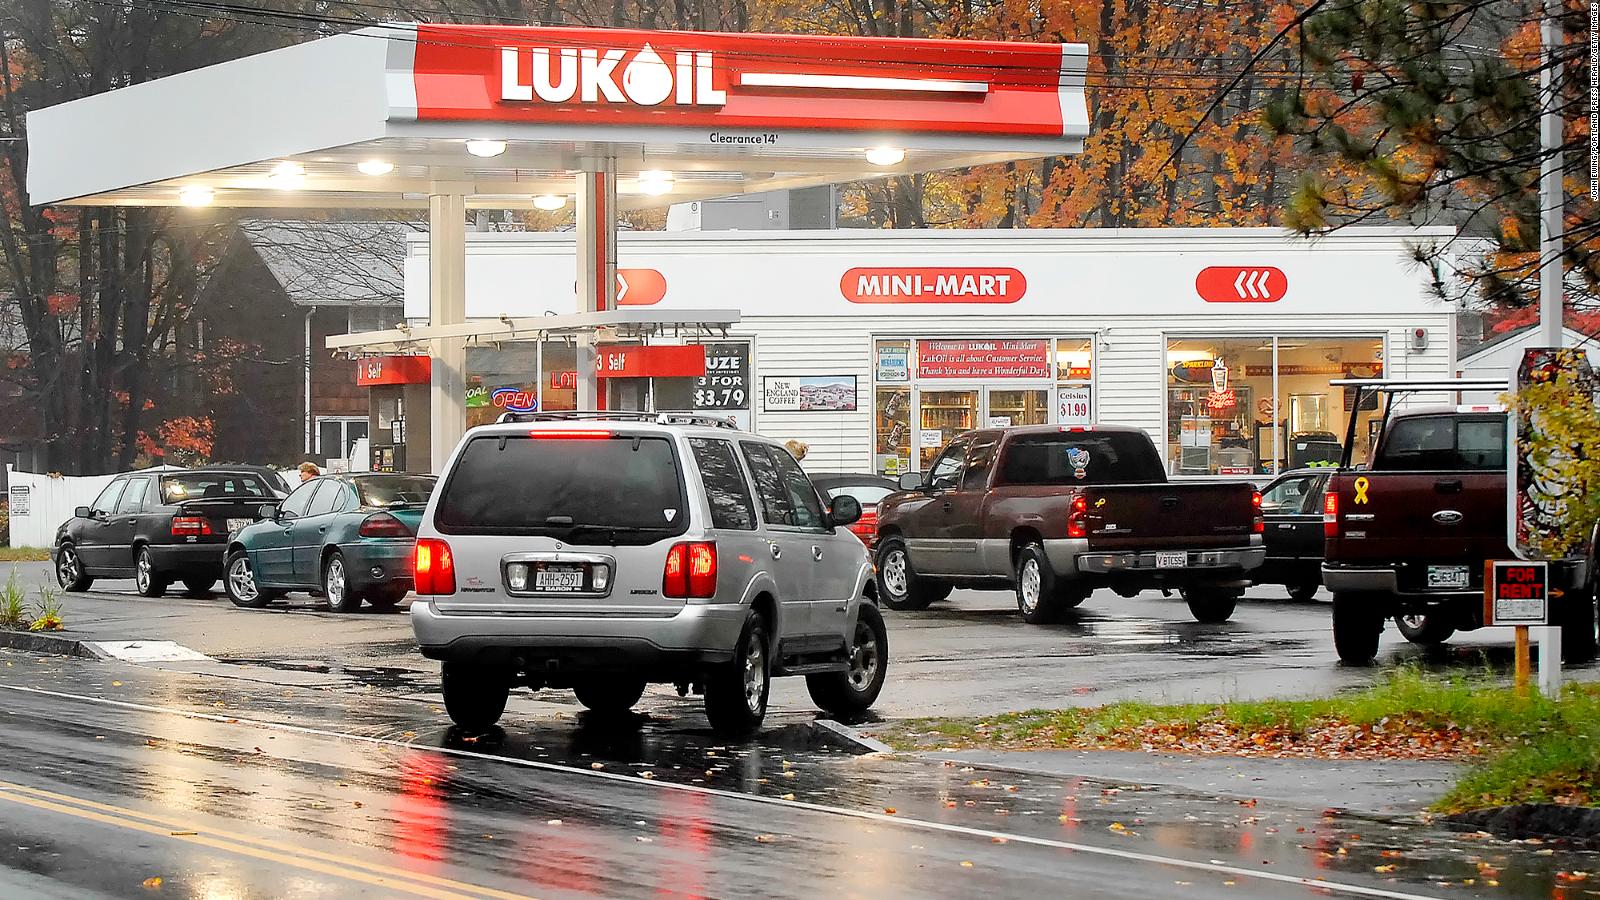 Segunda maior companhia da Rússia, a Lukoil se torna proprietária do Spartak  após duas décadas de patrocínio